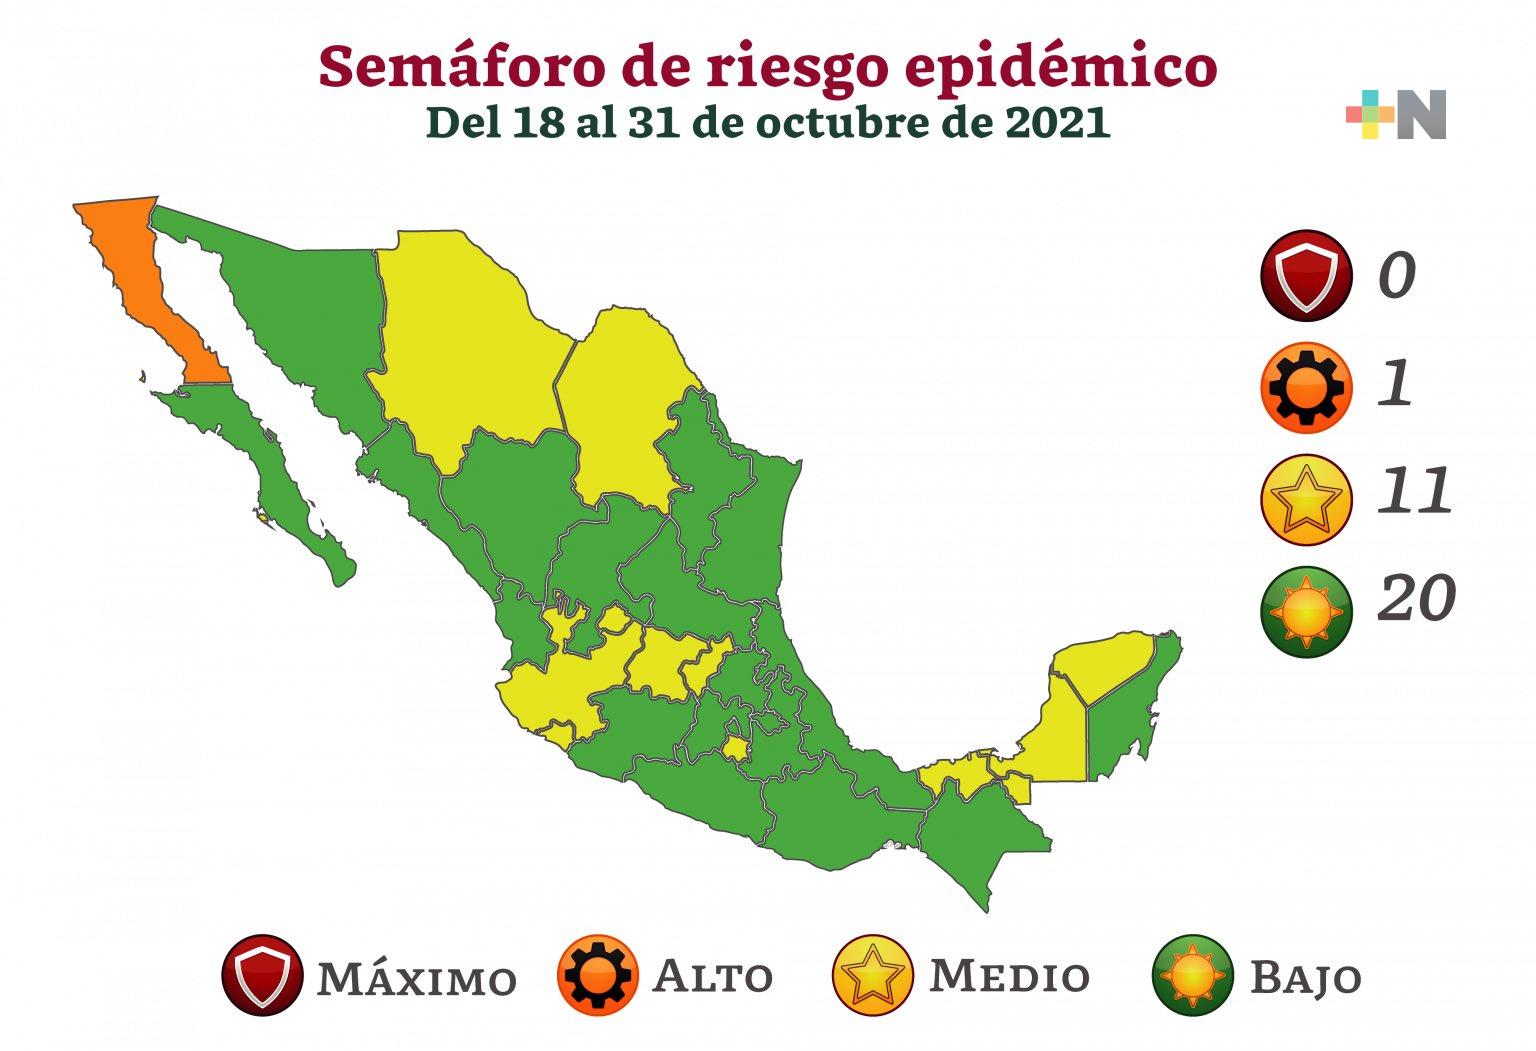 Veracruz pasa a color verde en semaforización epidemiológica nacional